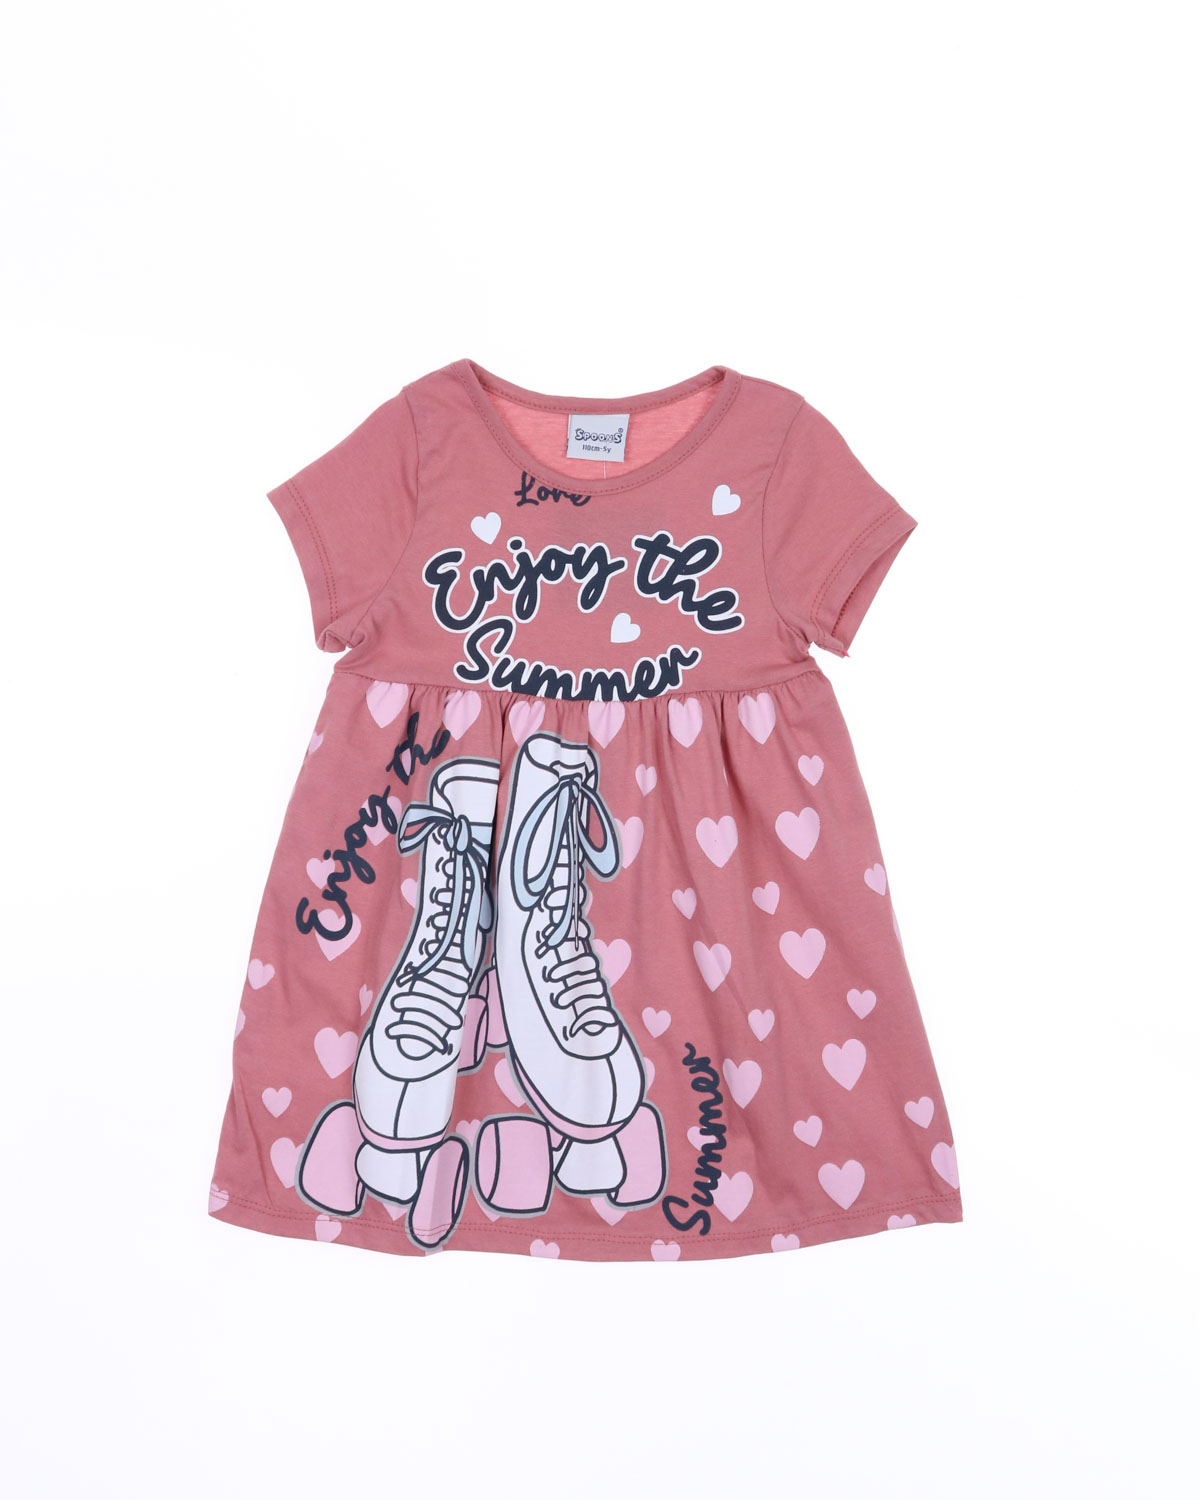 BENNA KIDS (Spoons) 12202 Платье (цвет: Розово-персиковый)